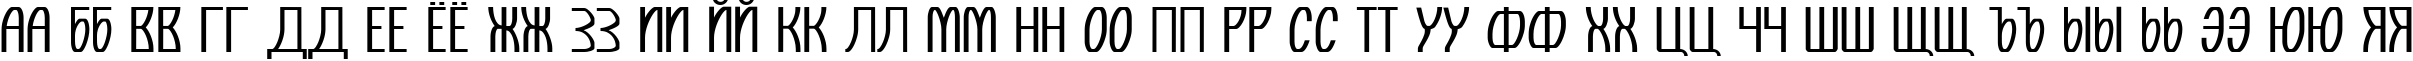 Пример написания русского алфавита шрифтом Komikaze